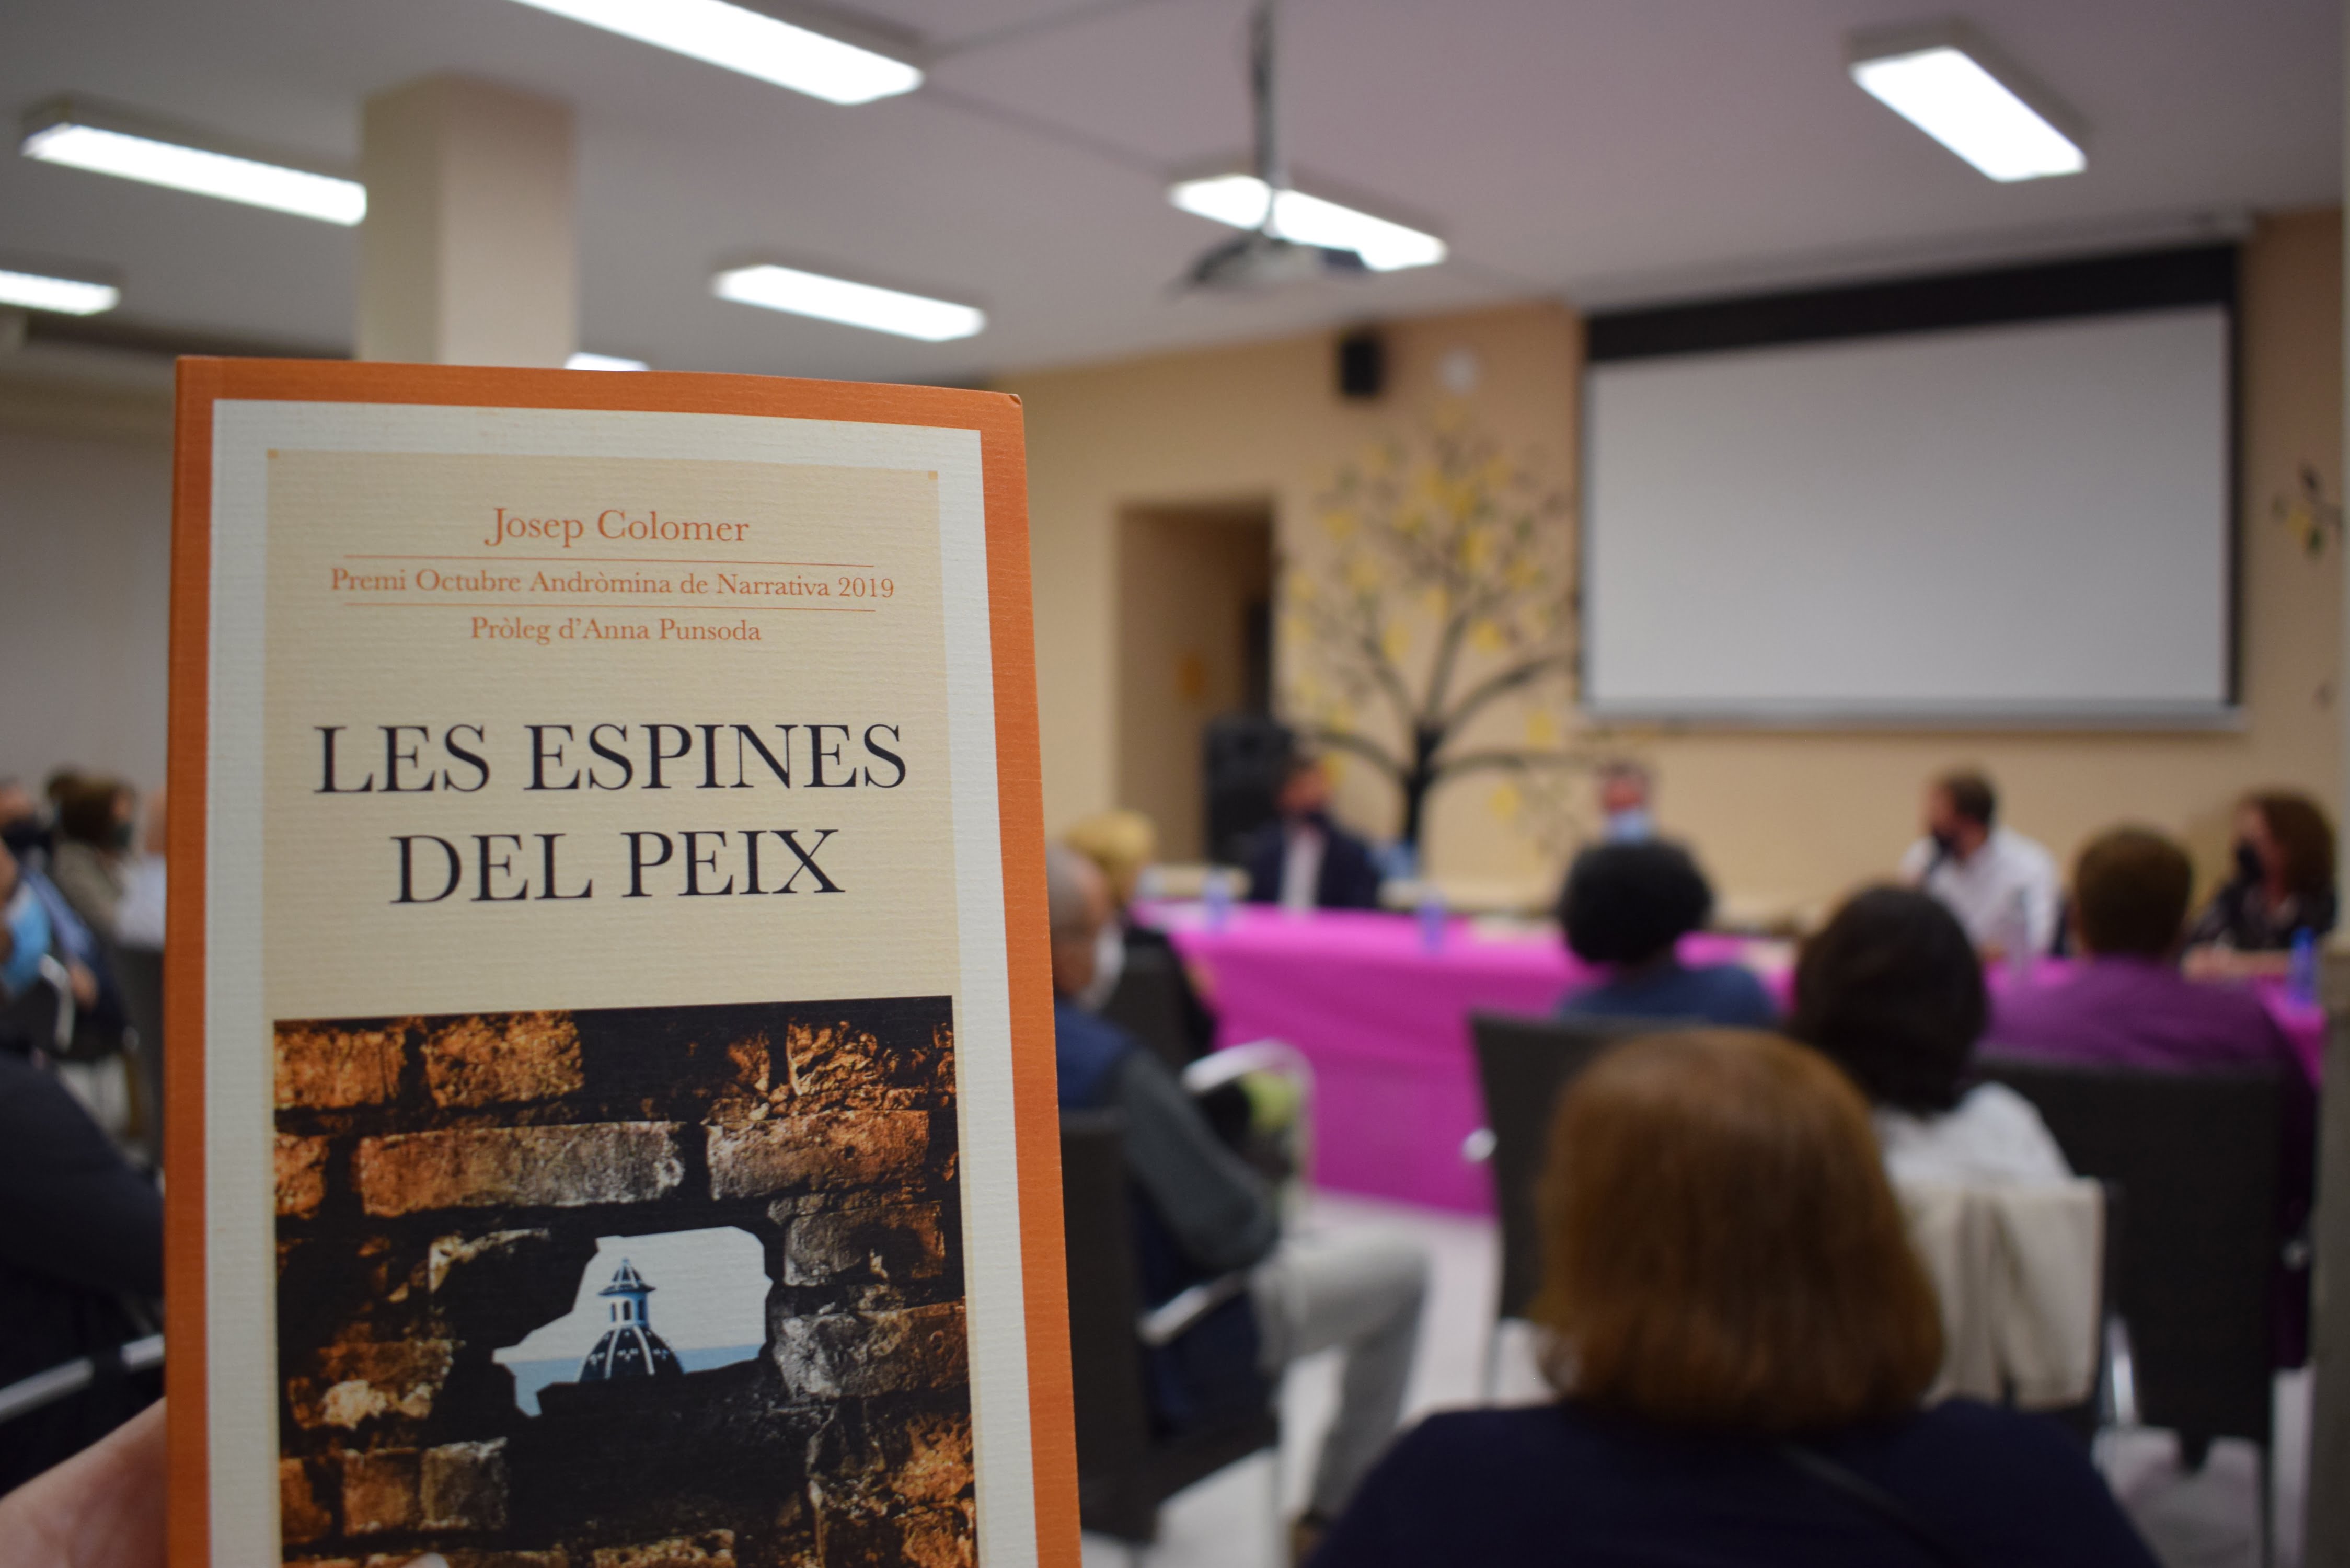 Presentación del libro de Josep Colomer